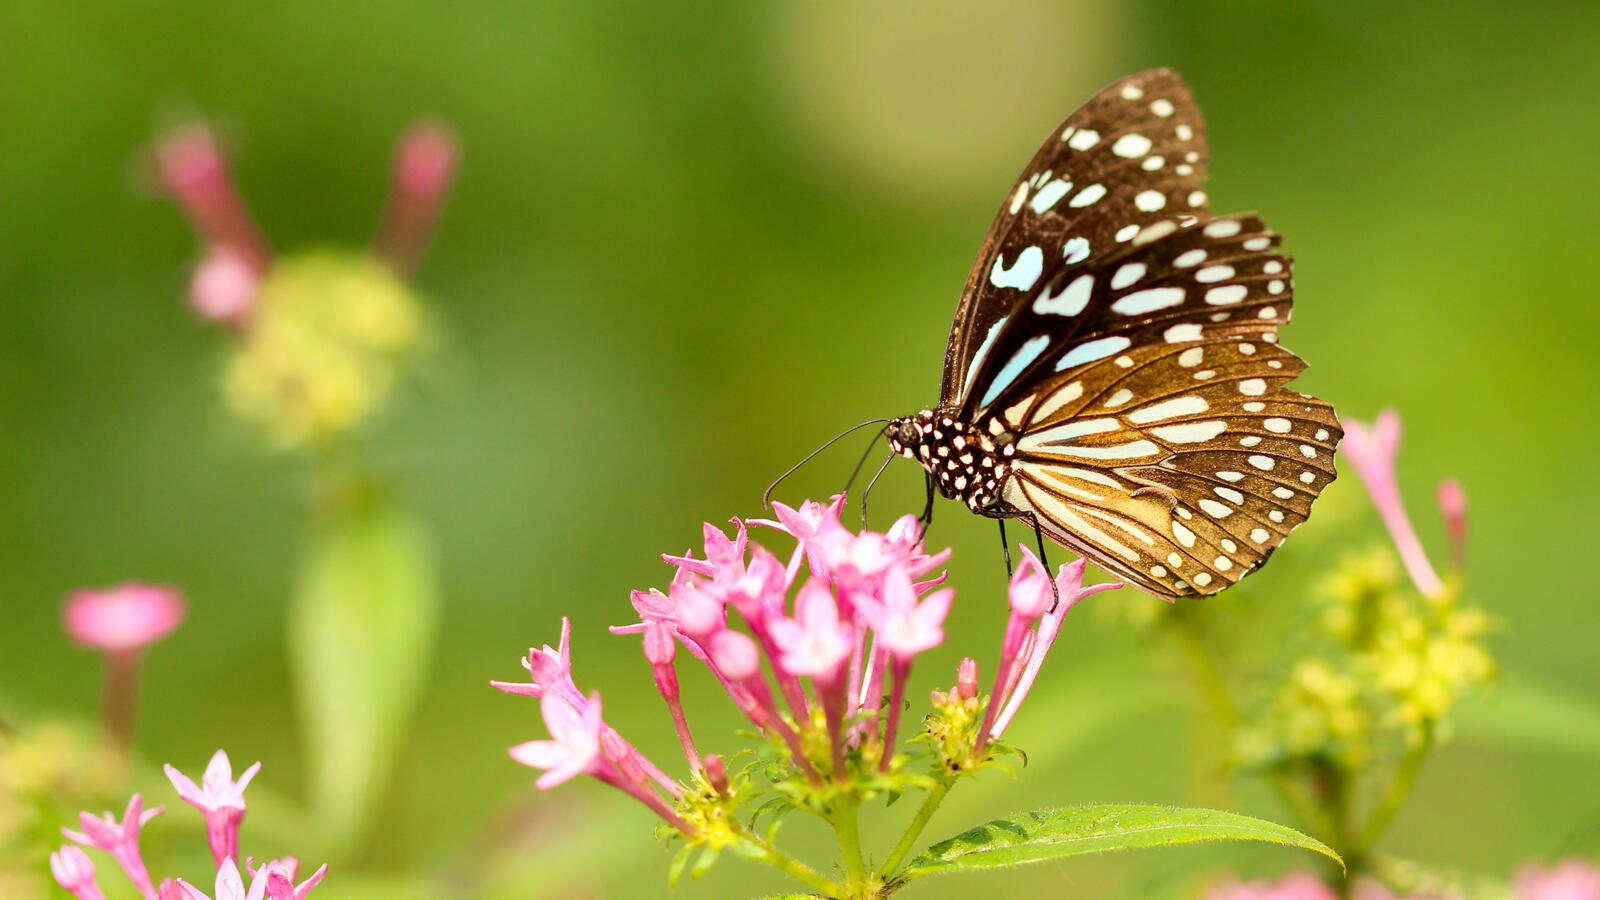 Бесплатное фото Черная бабочка на маленьких розовых цветочках